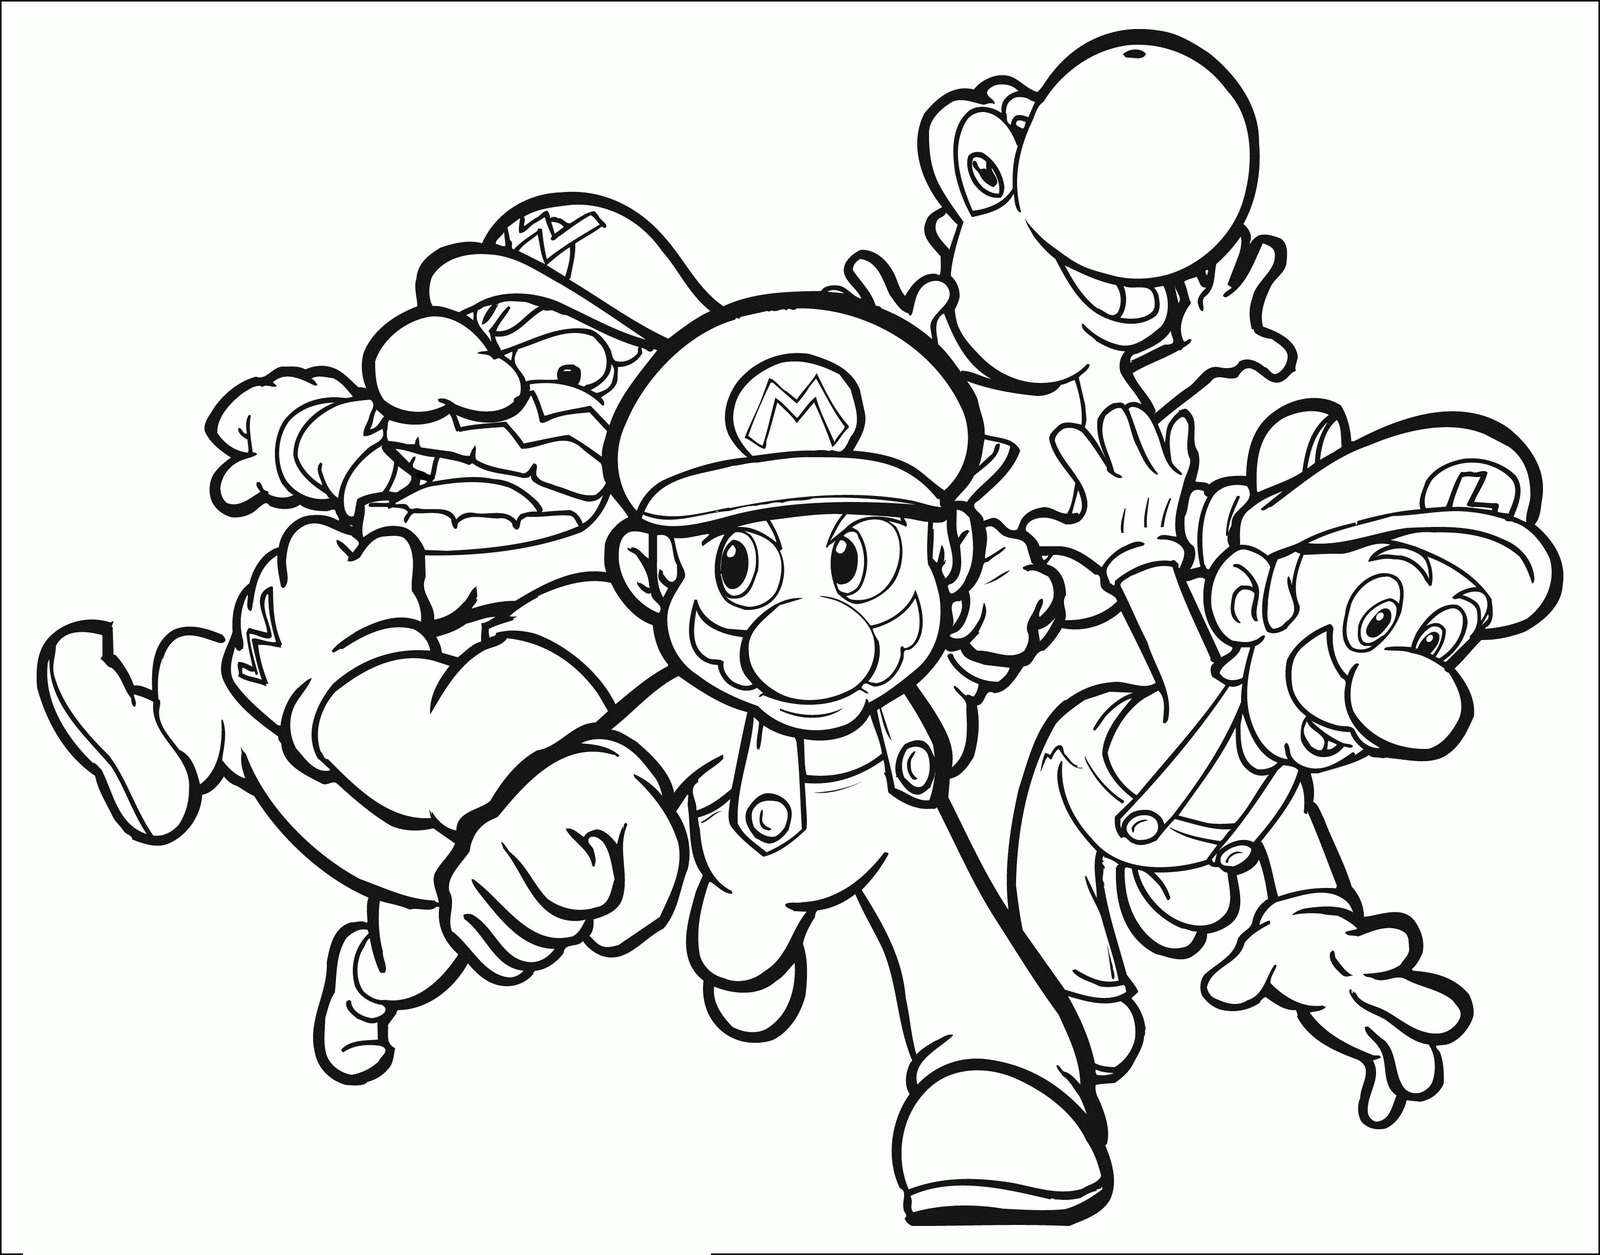 Coloriages Mario Bros - 1 - Coloriage Super Mario Pour Enfants à Coloriage Mario Luigi